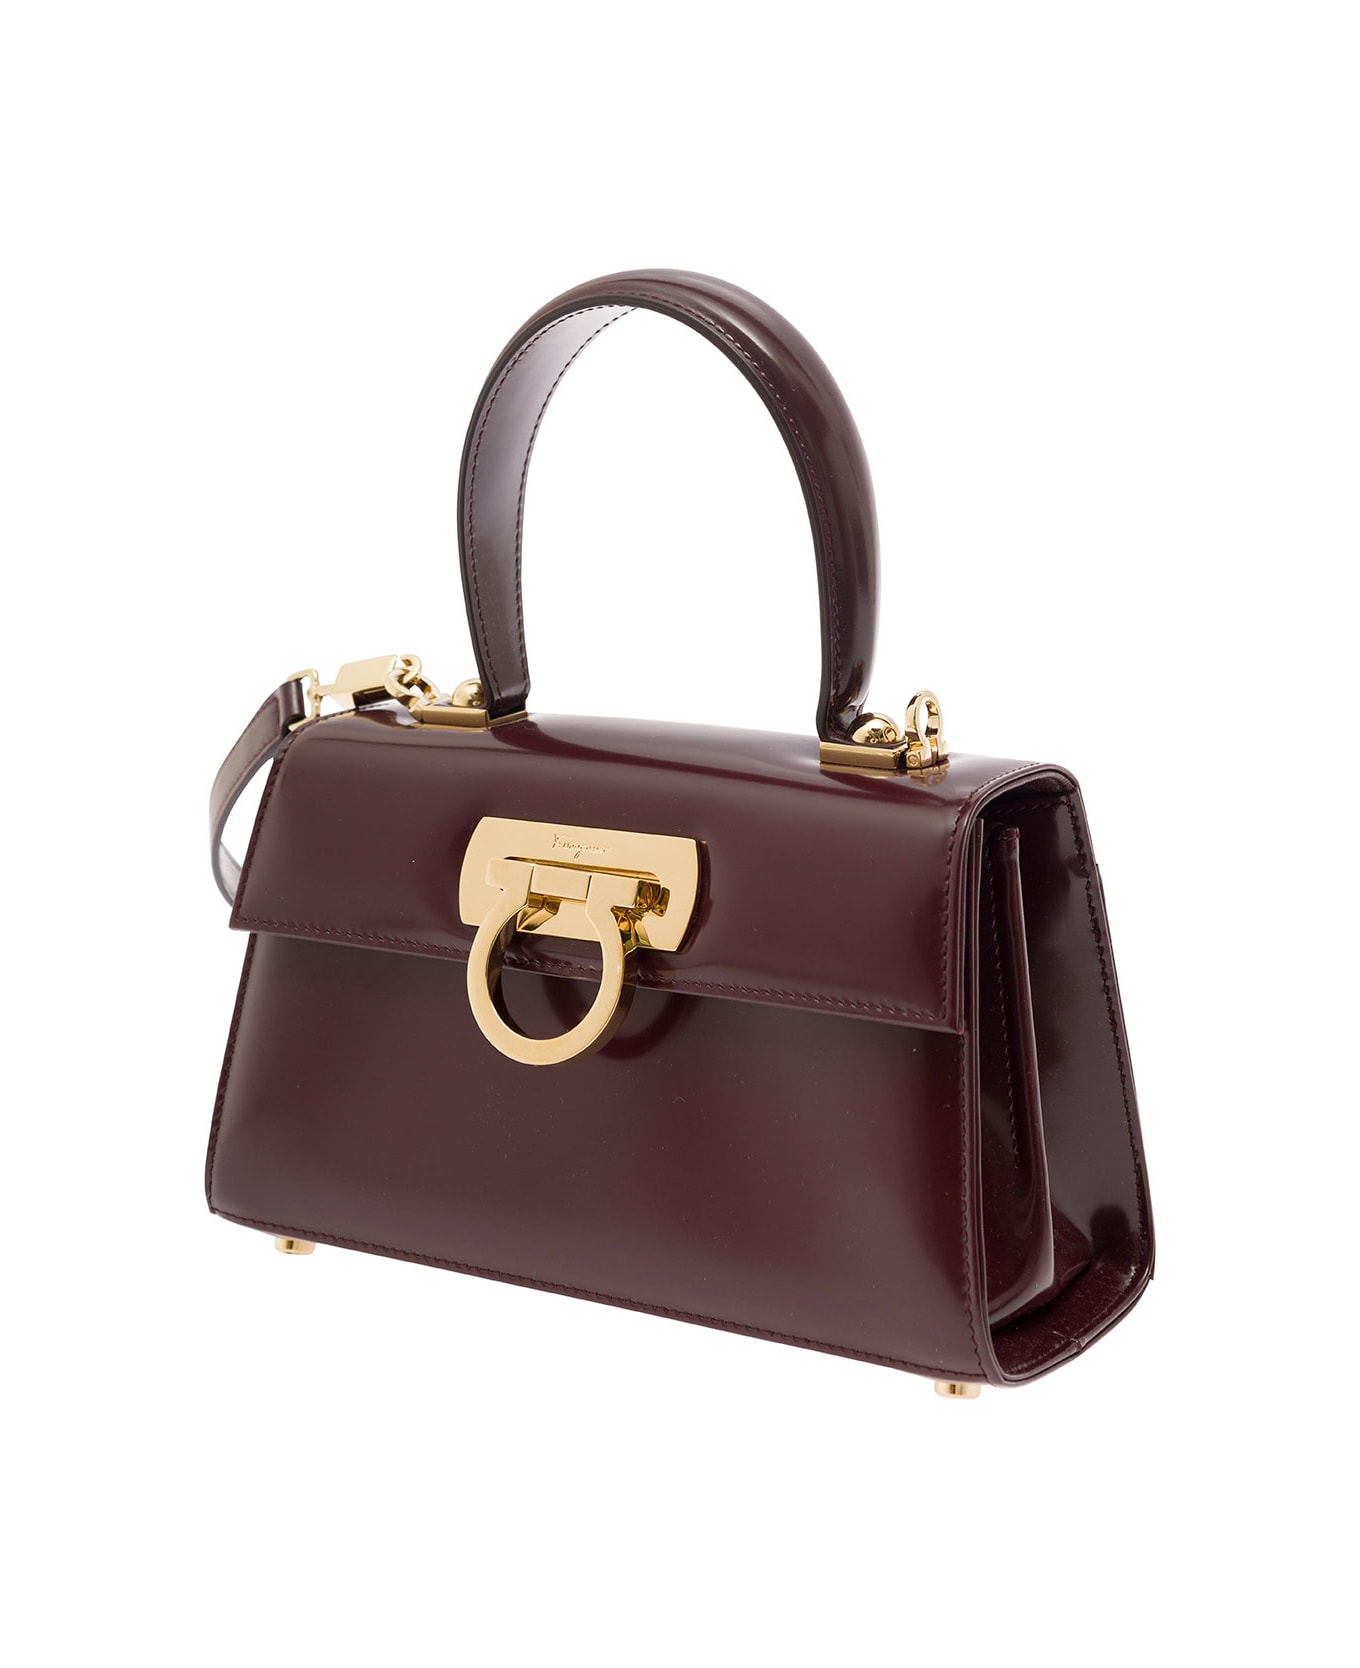 Ferragamo Bordeaux Handbag With Gancini Closure In Patent Leather Woman - Bordeaux